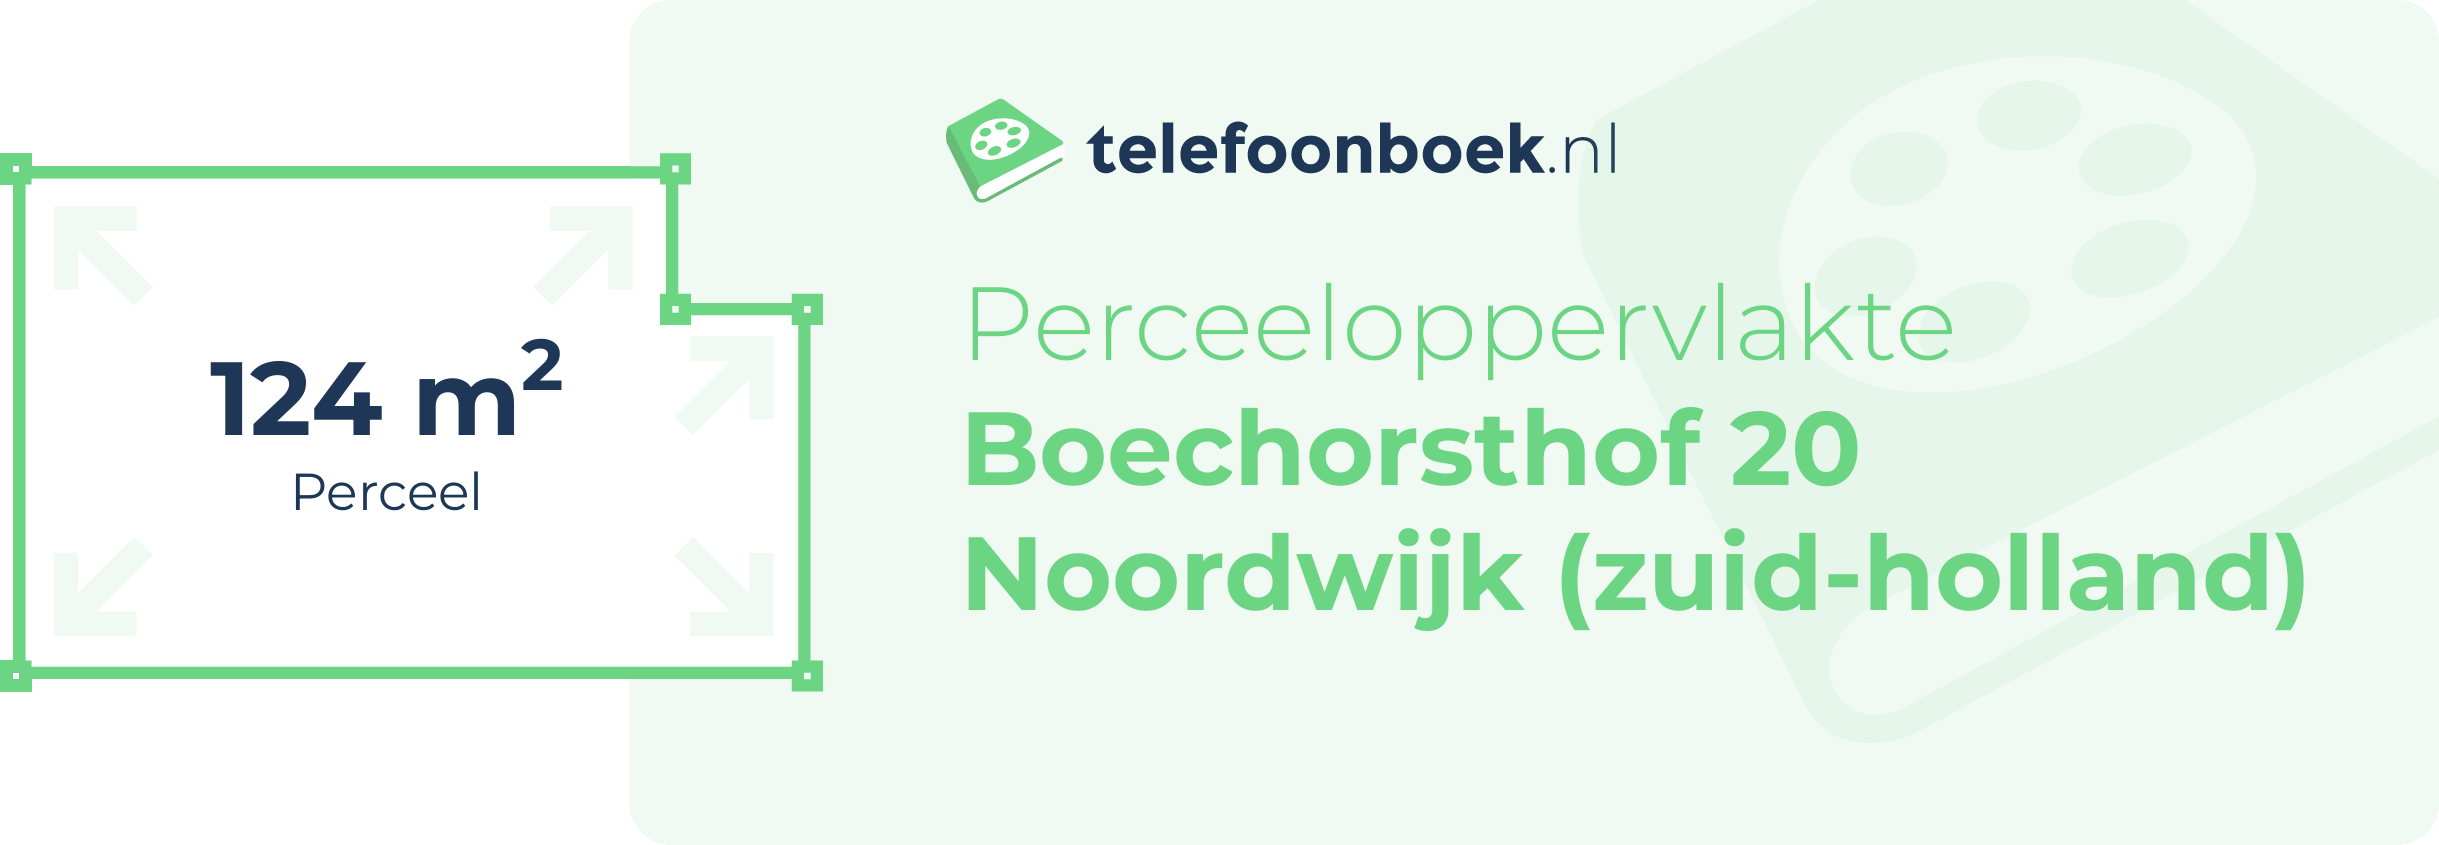 Perceeloppervlakte Boechorsthof 20 Noordwijk (Zuid-Holland)